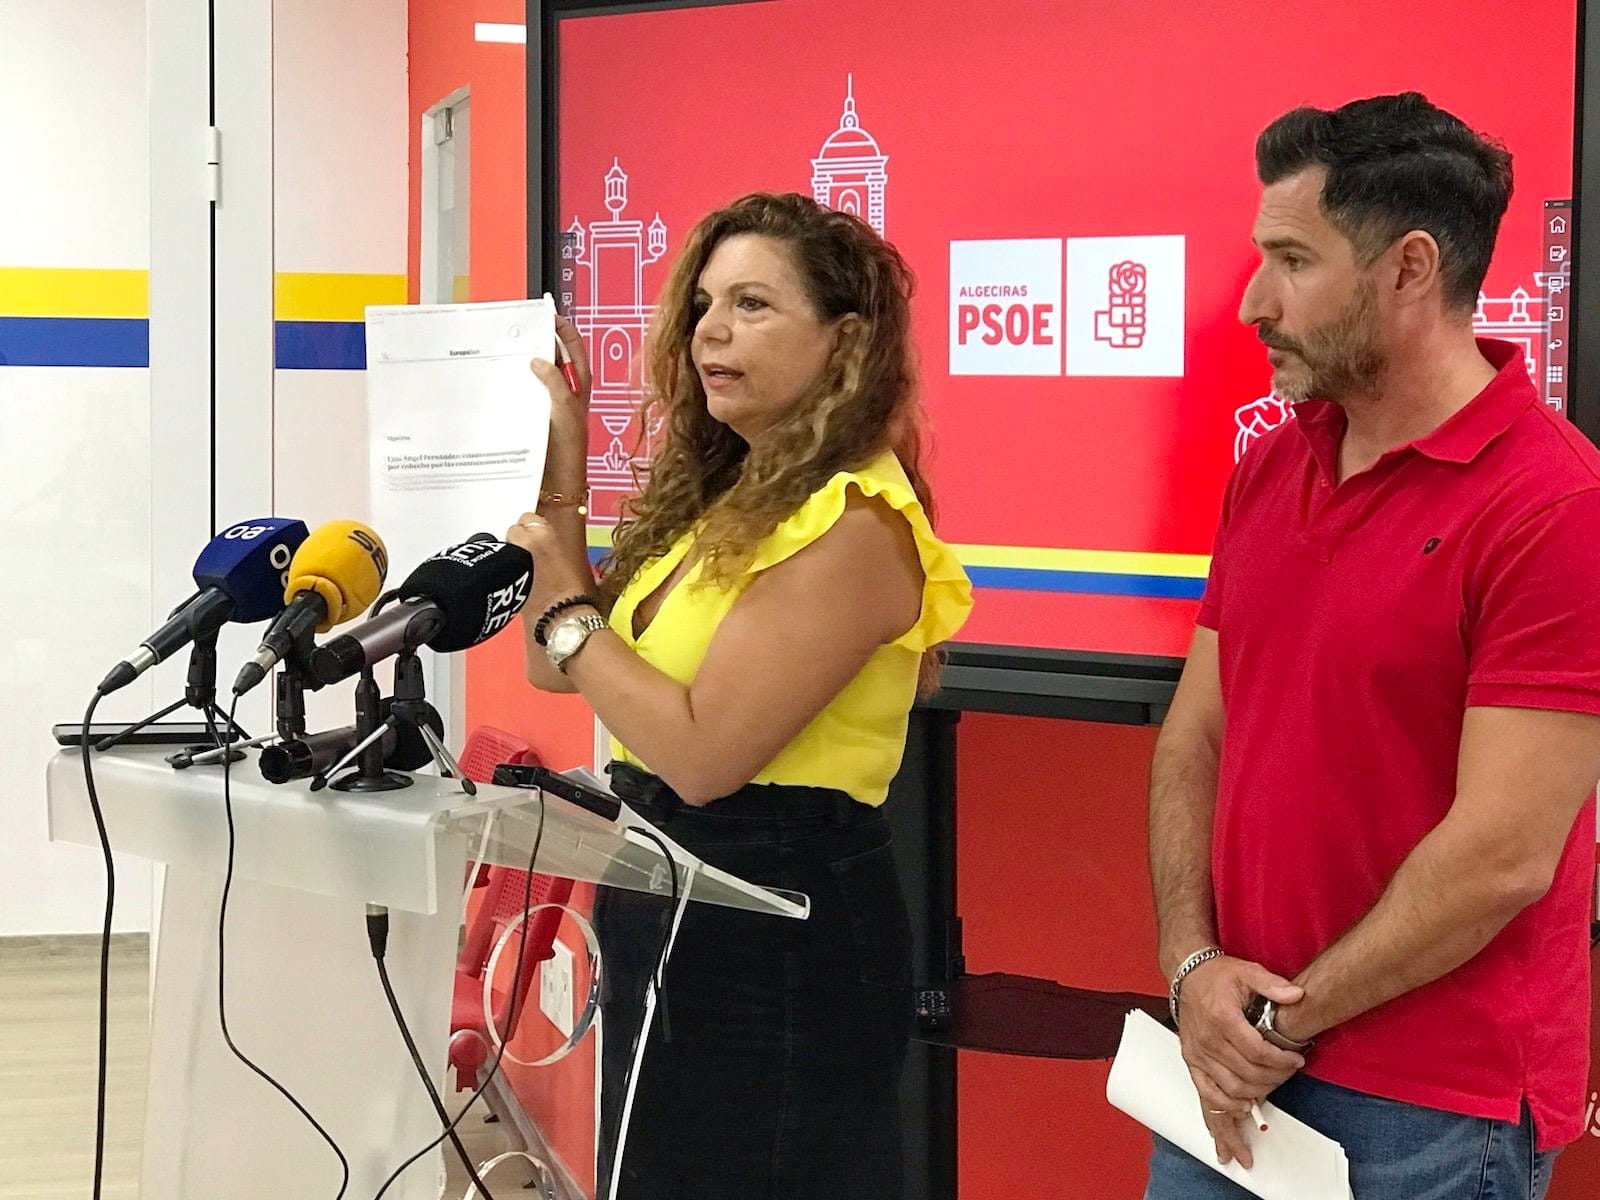 Fran Fernández y Paqui Pizarro, en rueda de prensa. El PSOE anuncia que presentará alegaciones a la bolsa de empleo de Algesa